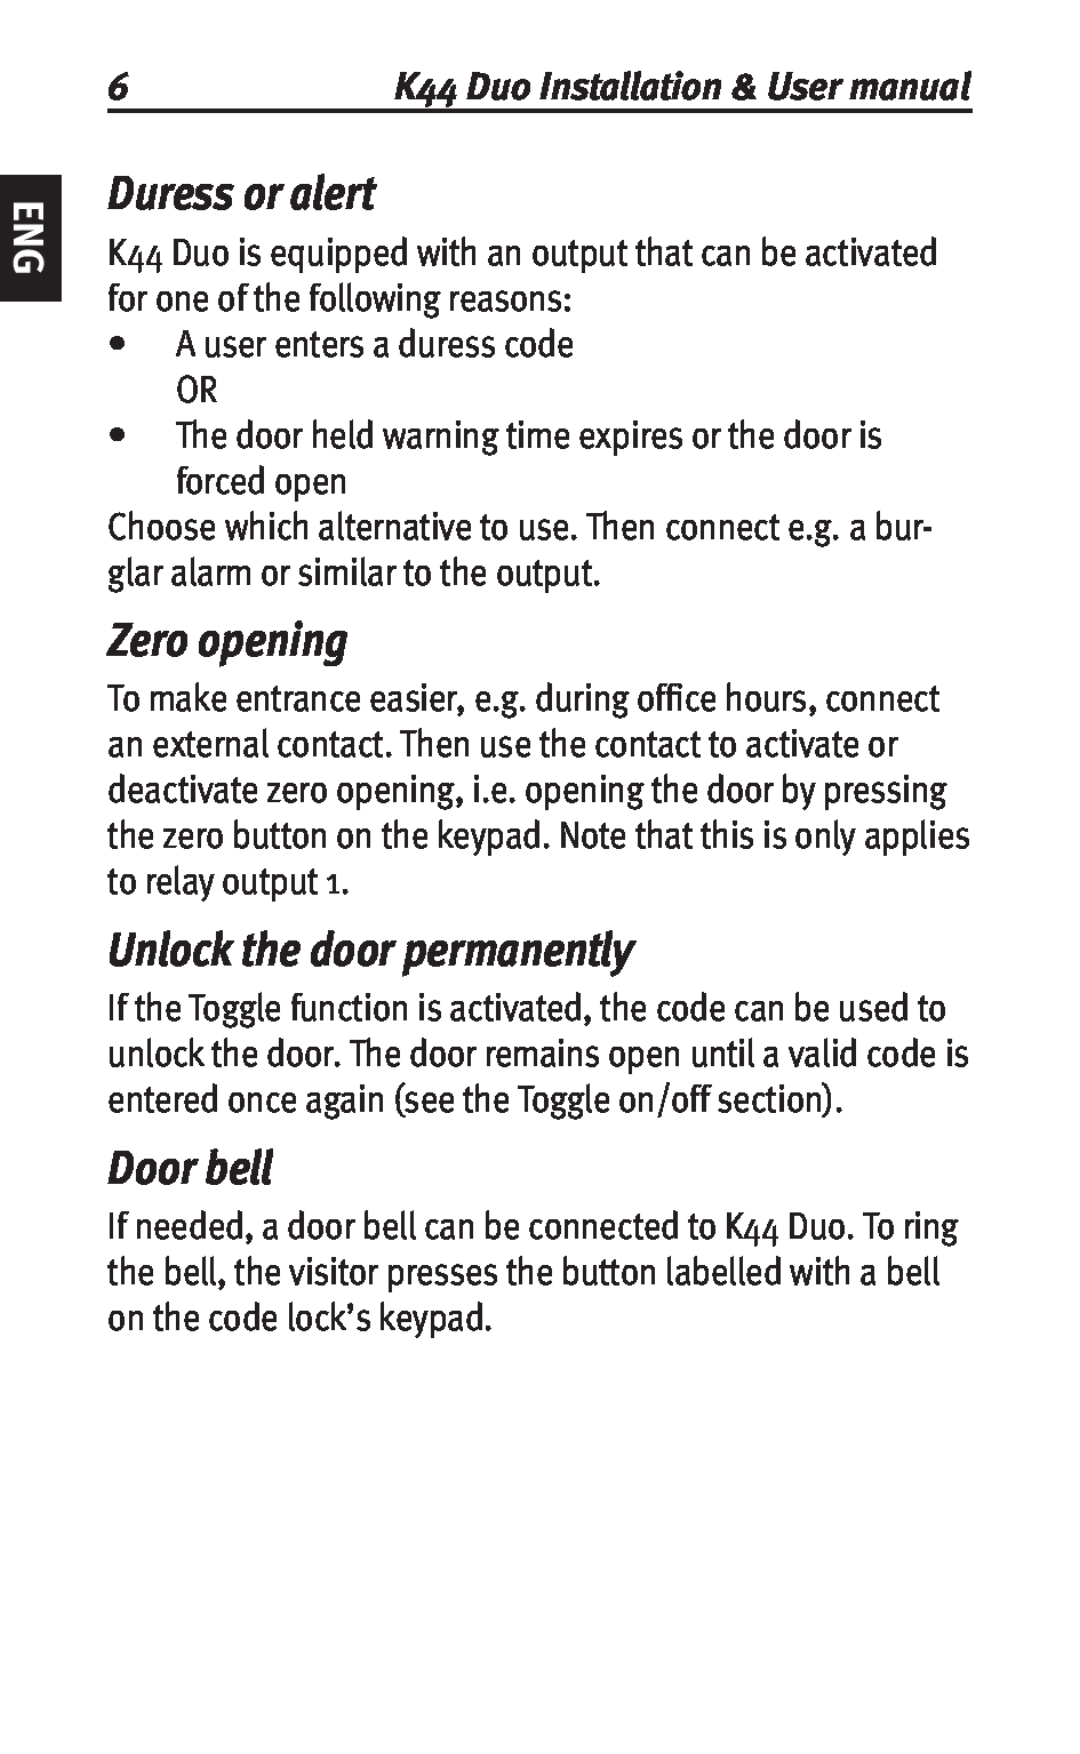 Siemens K44 user manual Duress or alert, Zero opening, Unlock the door permanently, Door bell 